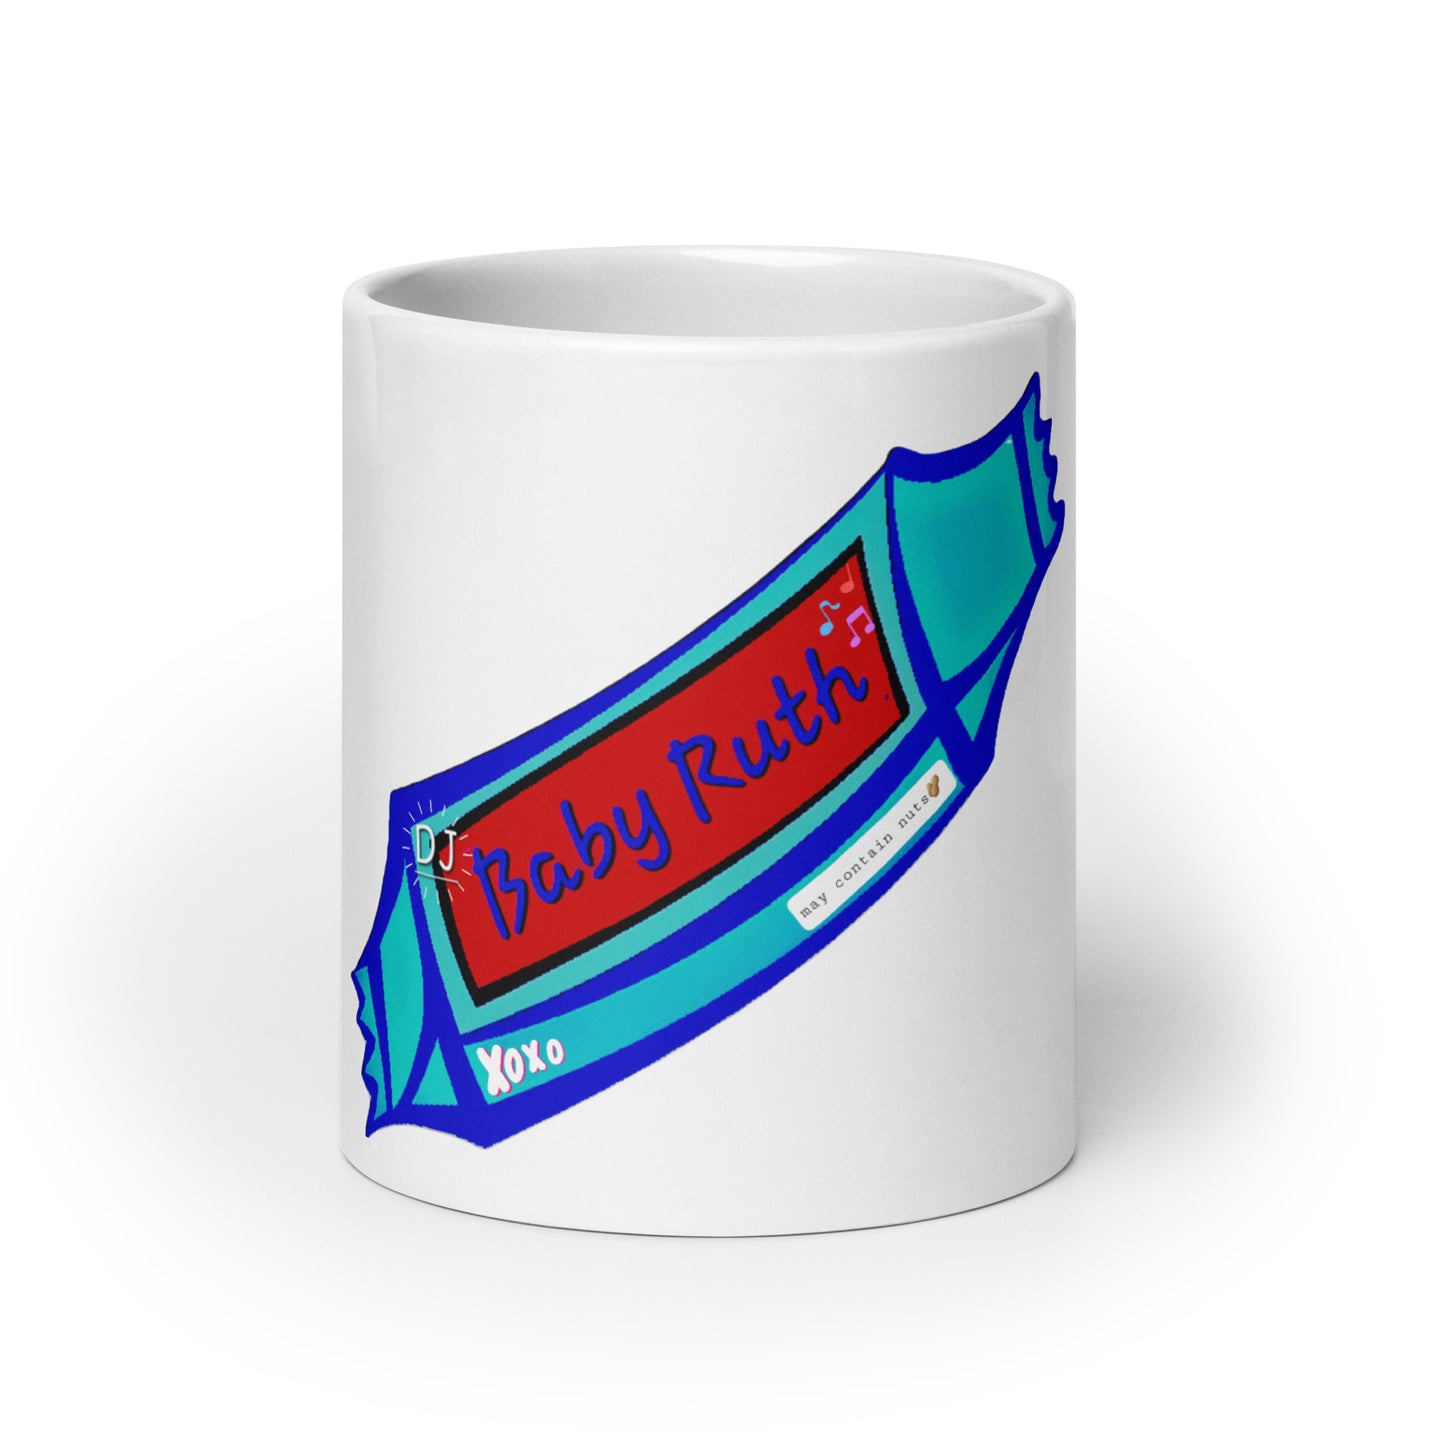 DJ BABY RUTH White glossy mug